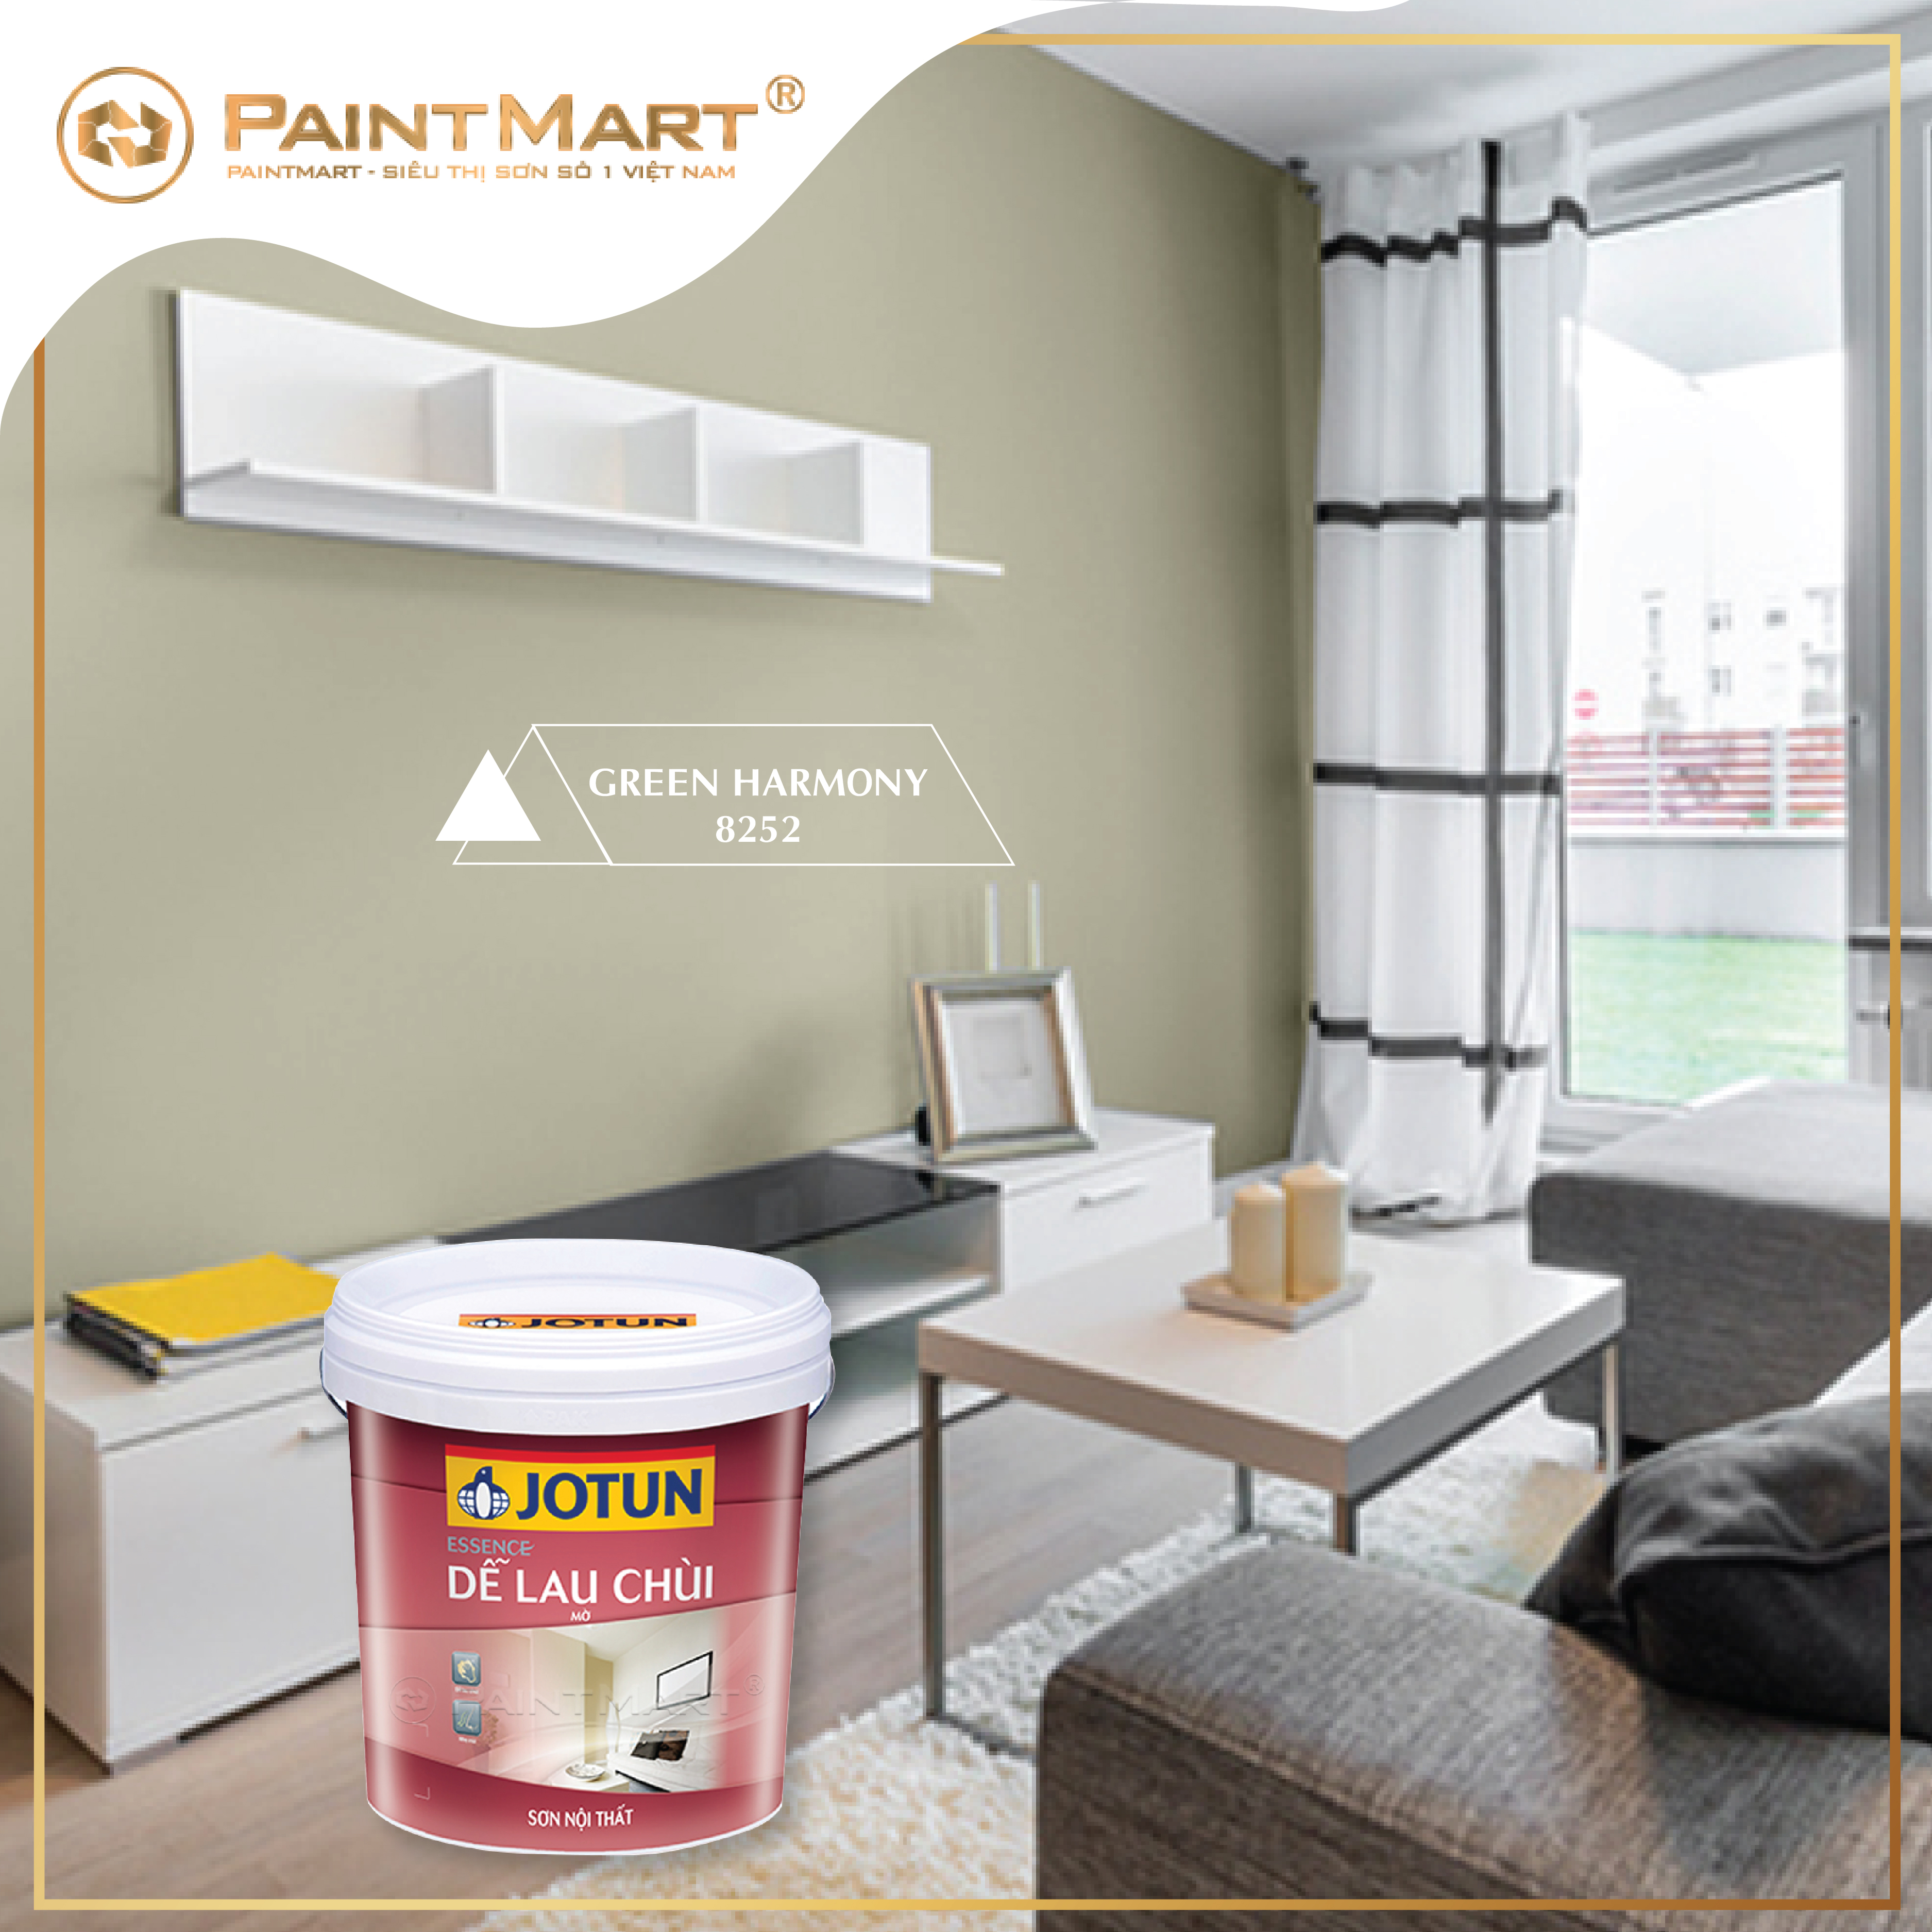 Sơn Jotun: Không gian sống của bạn sẽ trở nên sáng sủa và đầy màu sắc với những sản phẩm sơn Jotun chất lượng. Với khả năng chống trầy, chống thấm, sơn Jotun sẽ trở thành sự lựa chọn tuyệt vời cho ngôi nhà của bạn.